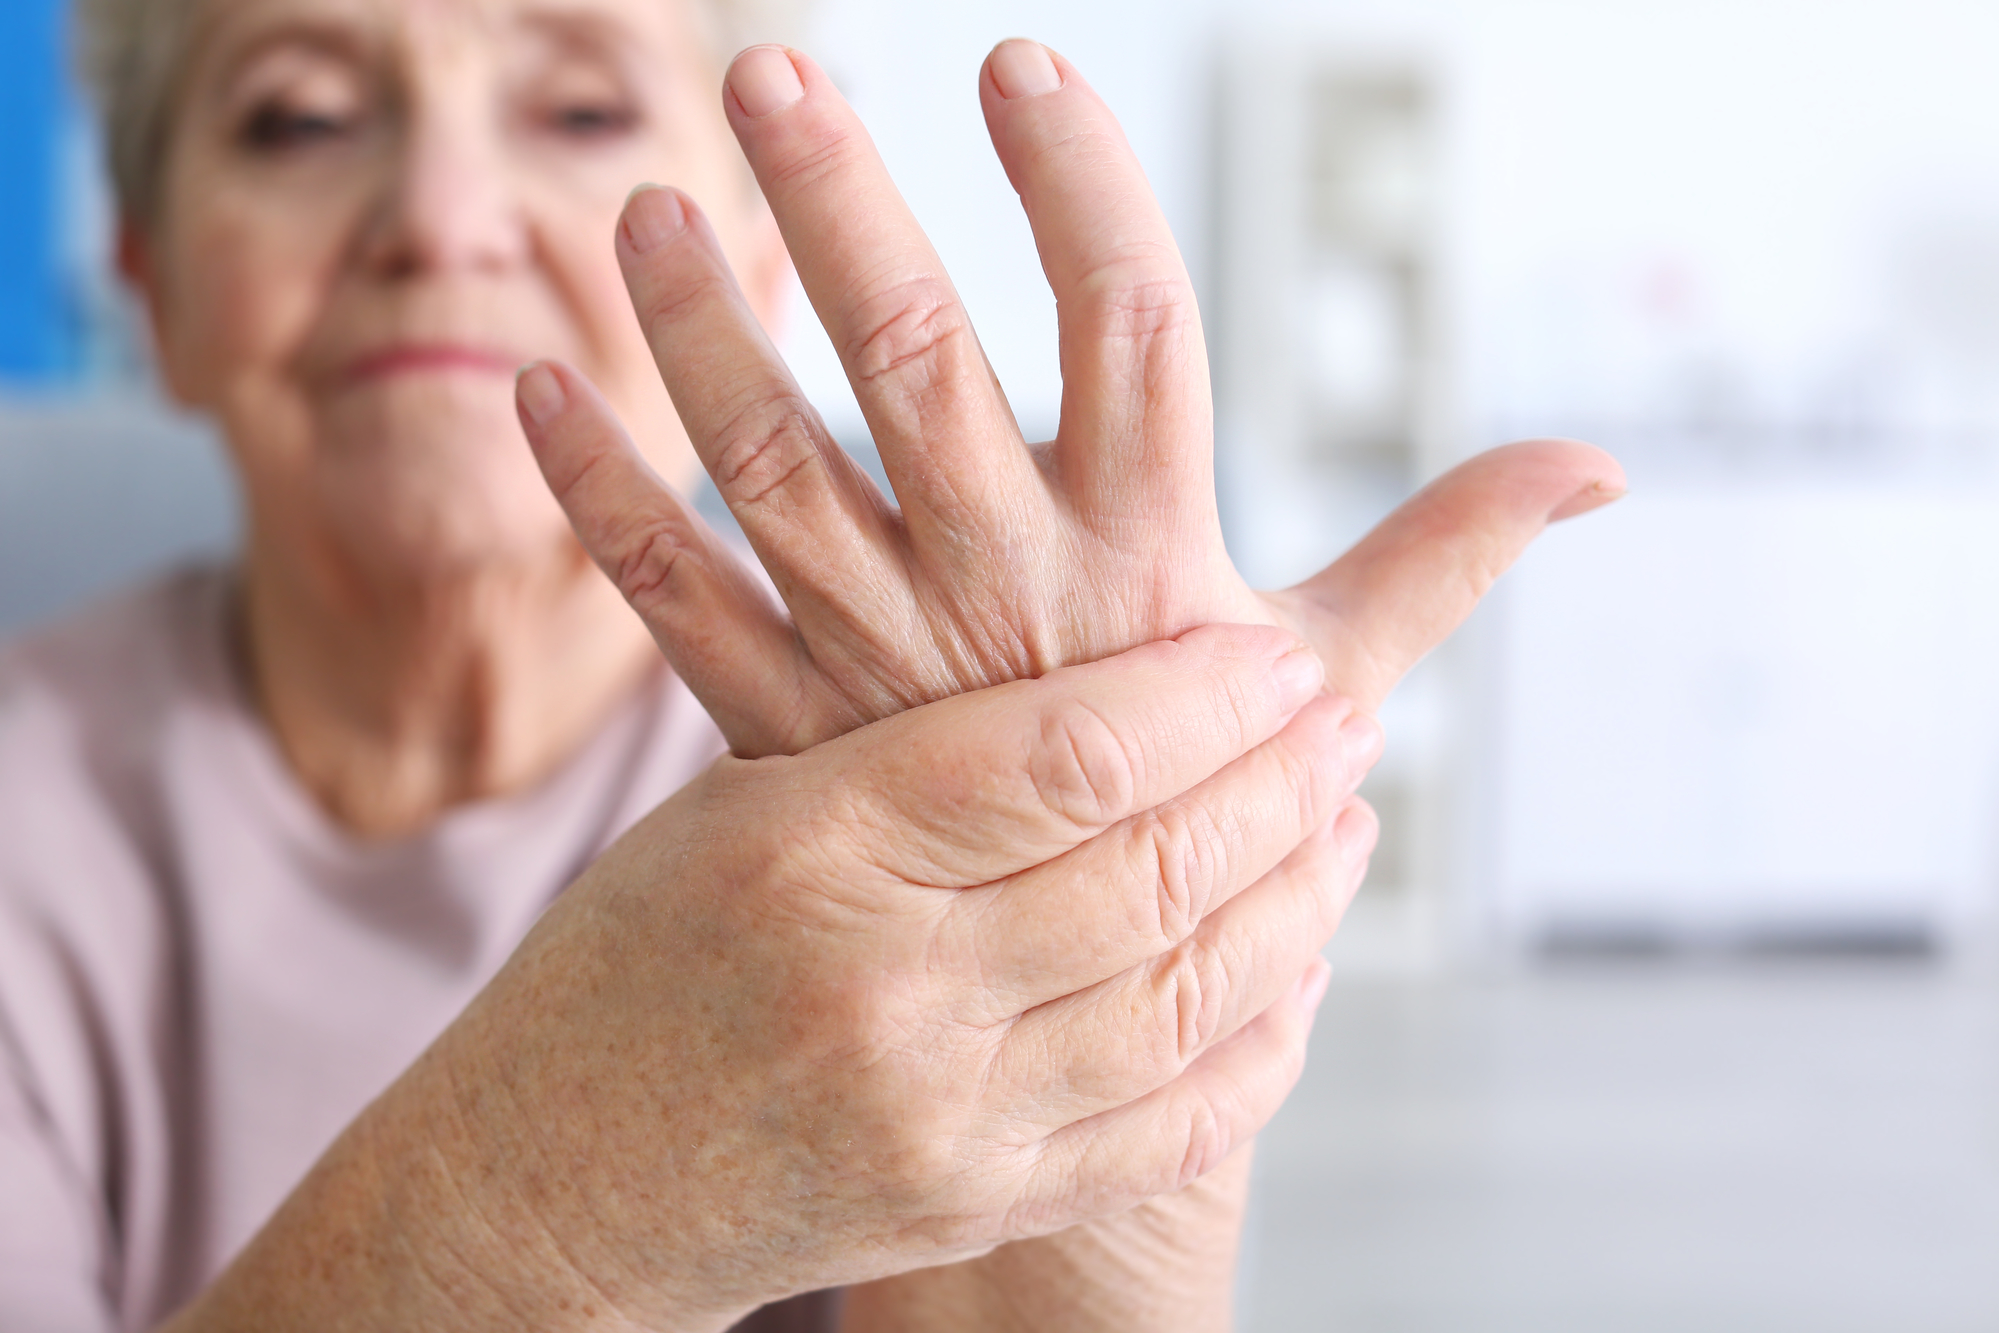 artritis reumatoide síntomas